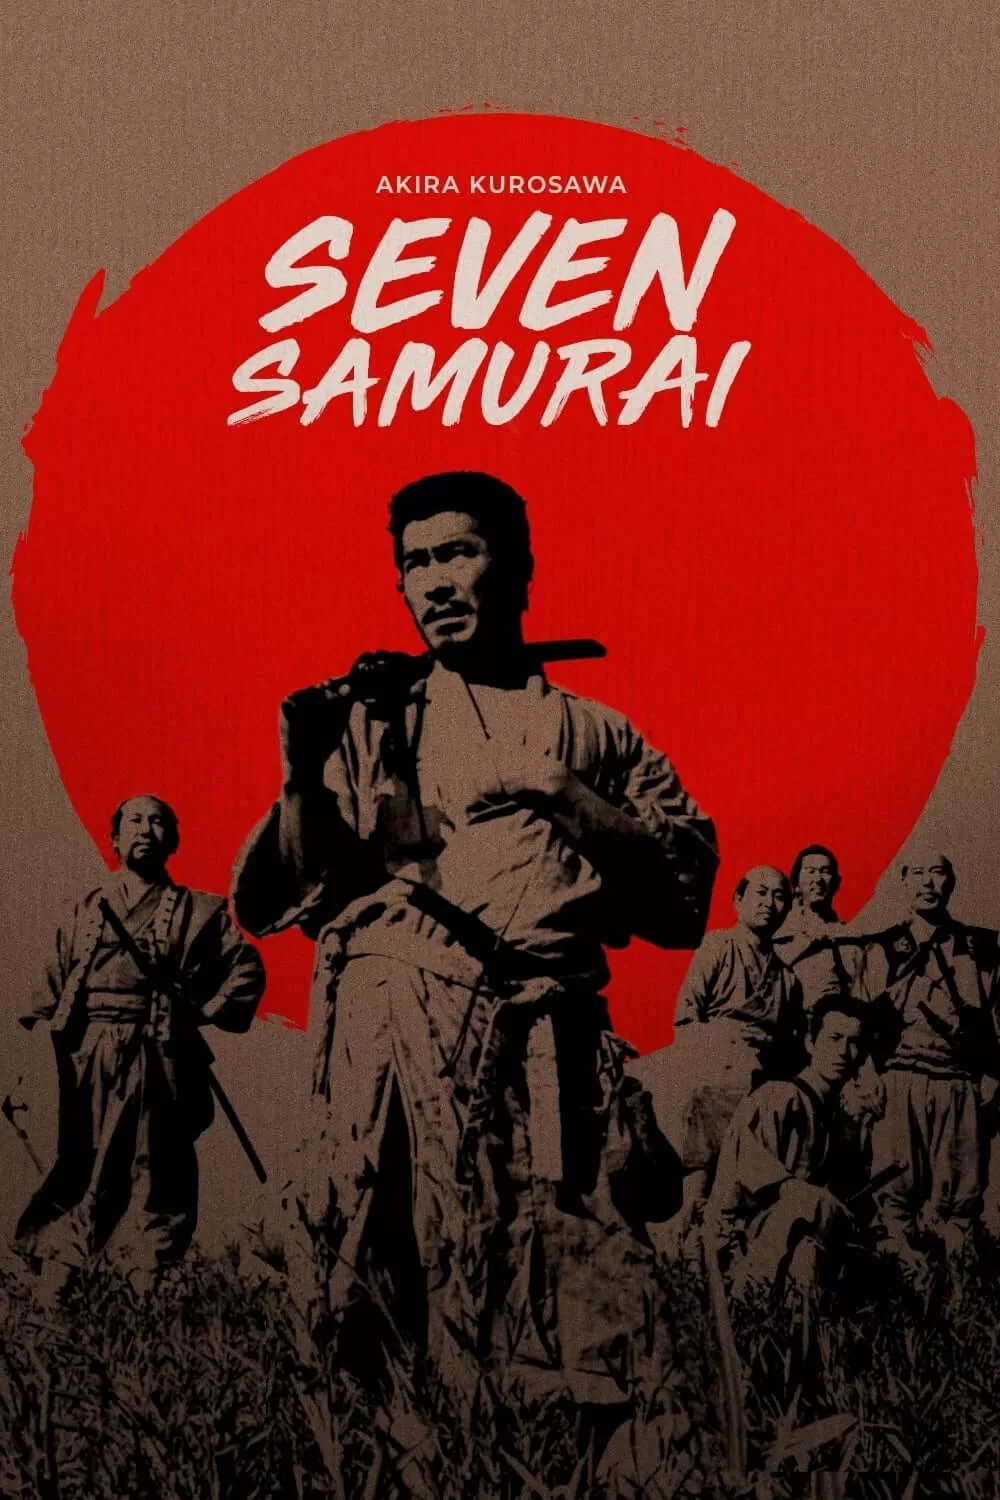 دانلود فیلم هفت سامورائی Seven Samurai